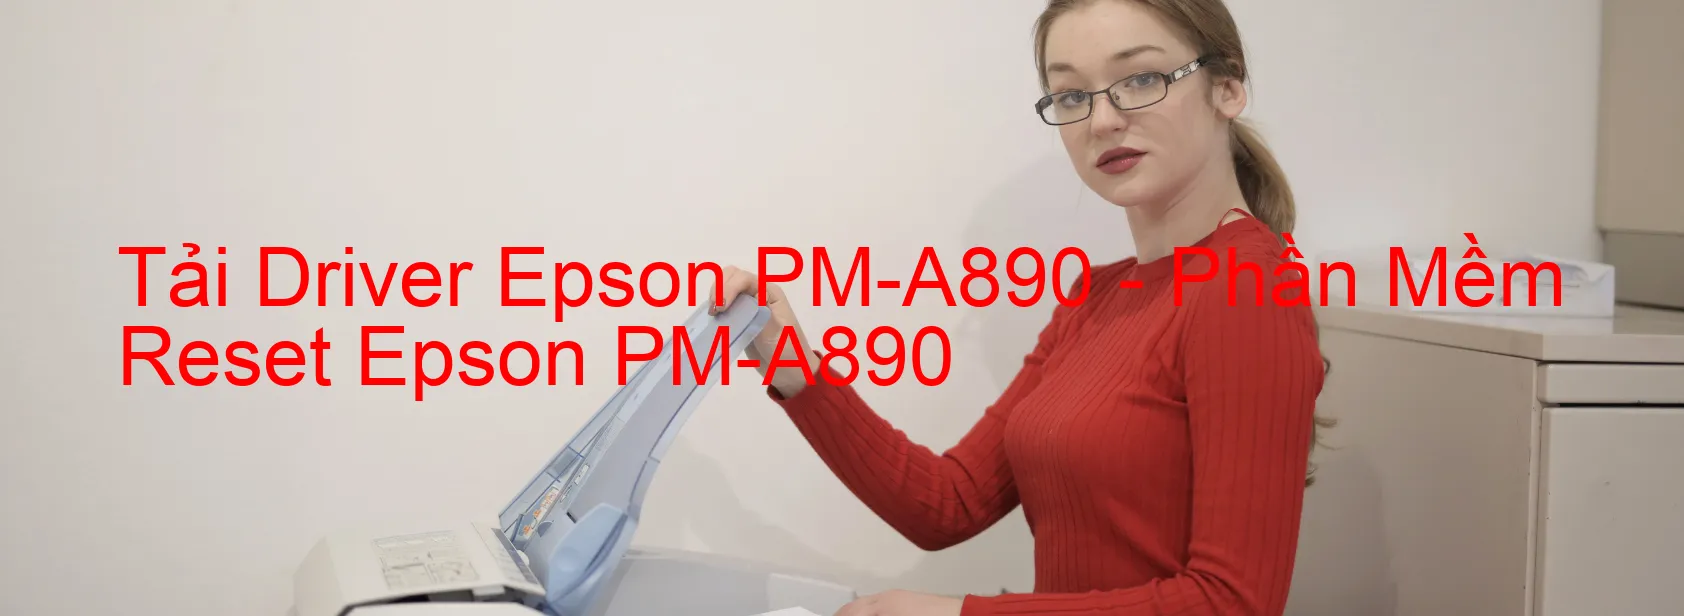 Driver Epson PM-A890, Phần Mềm Reset Epson PM-A890